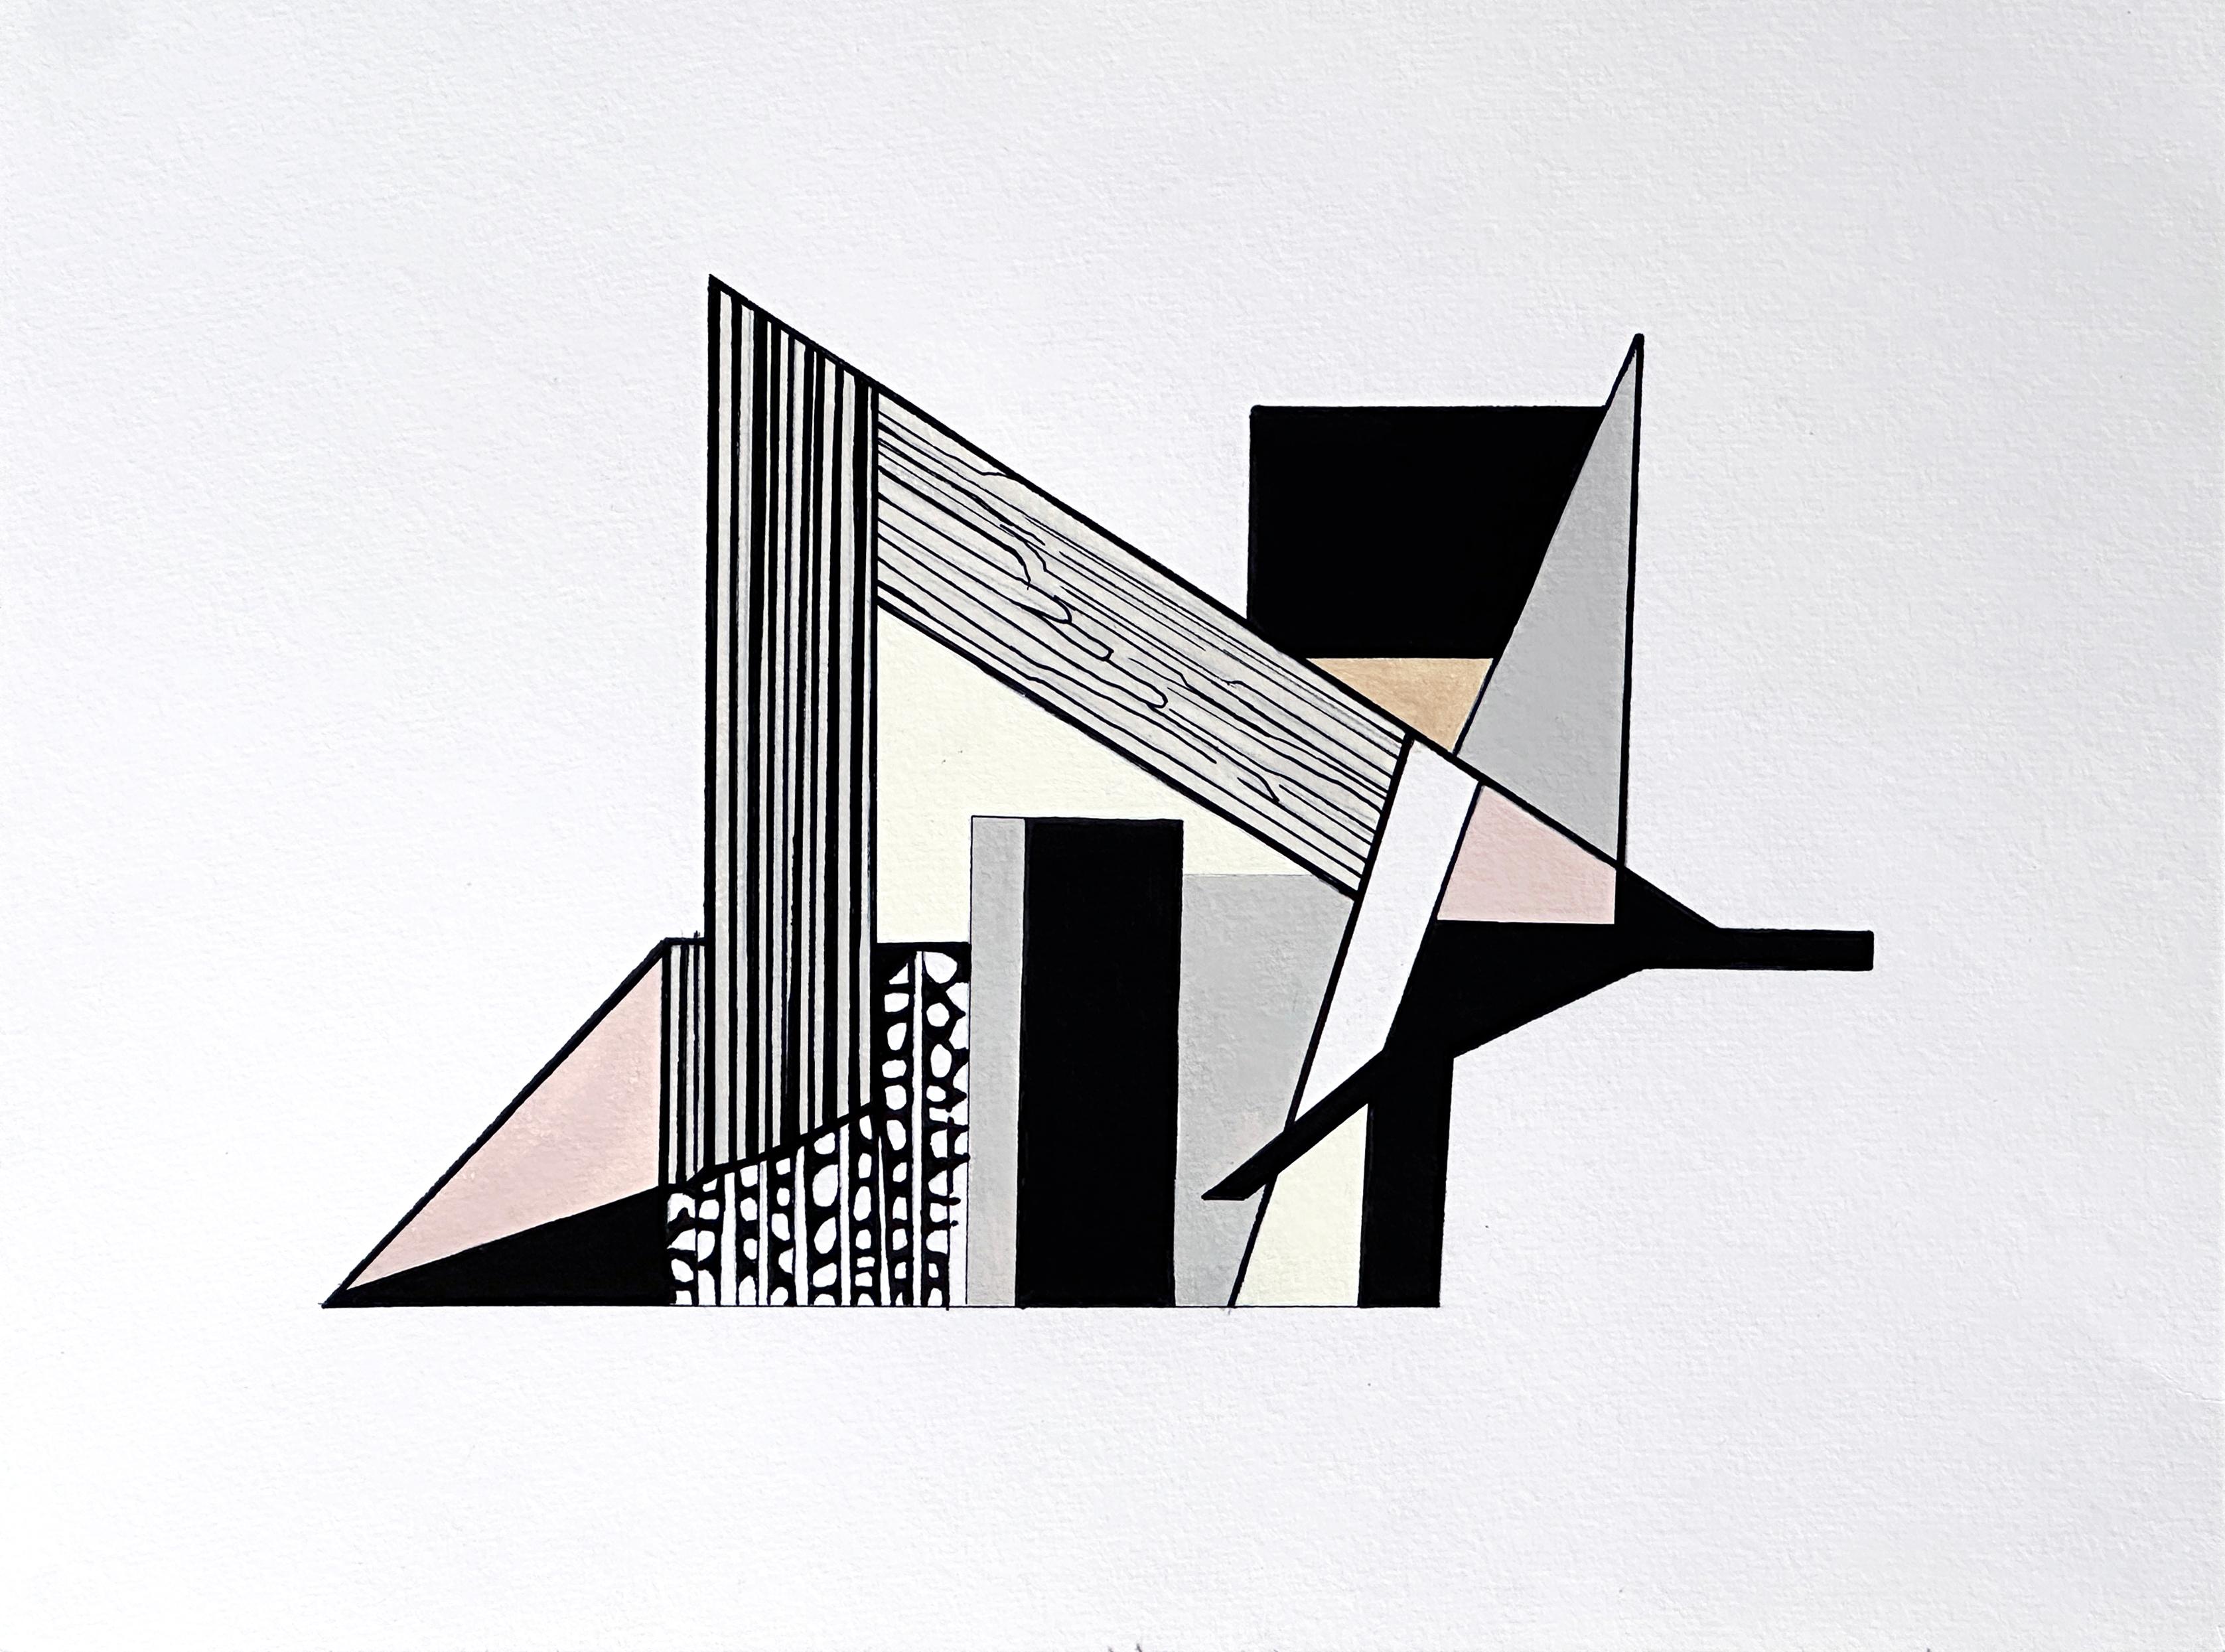 Amanda Andersen Abstract Painting – "Edifice V" zeitgenössische Zeichnung, abstrakte geometrische, natürliche Architektur